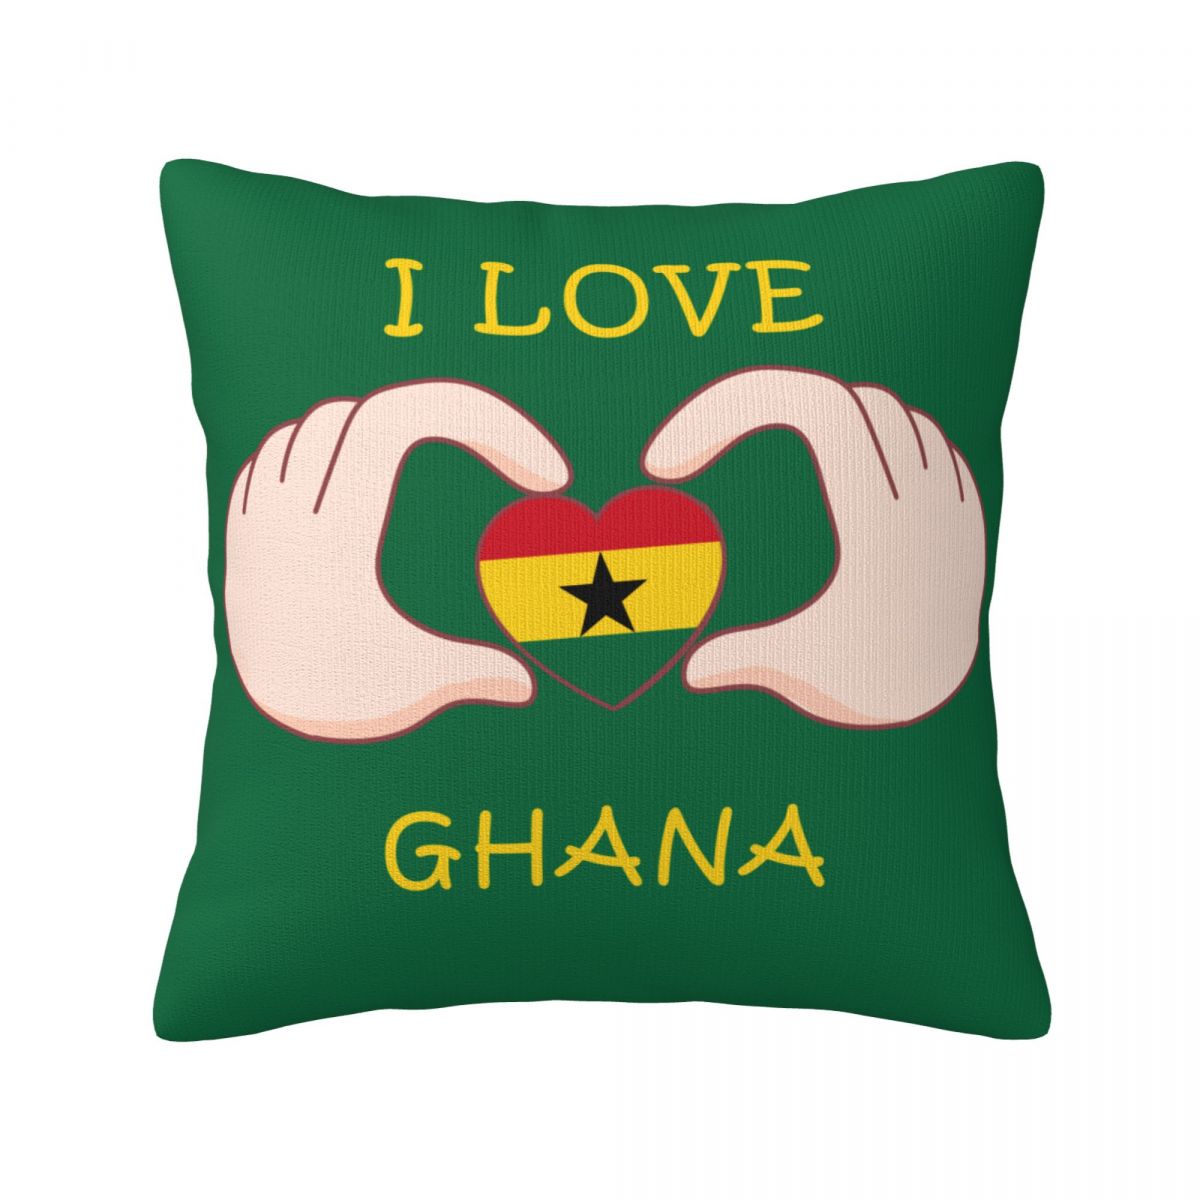 I Love Ghana Throw Pillows 18 x 18 inch